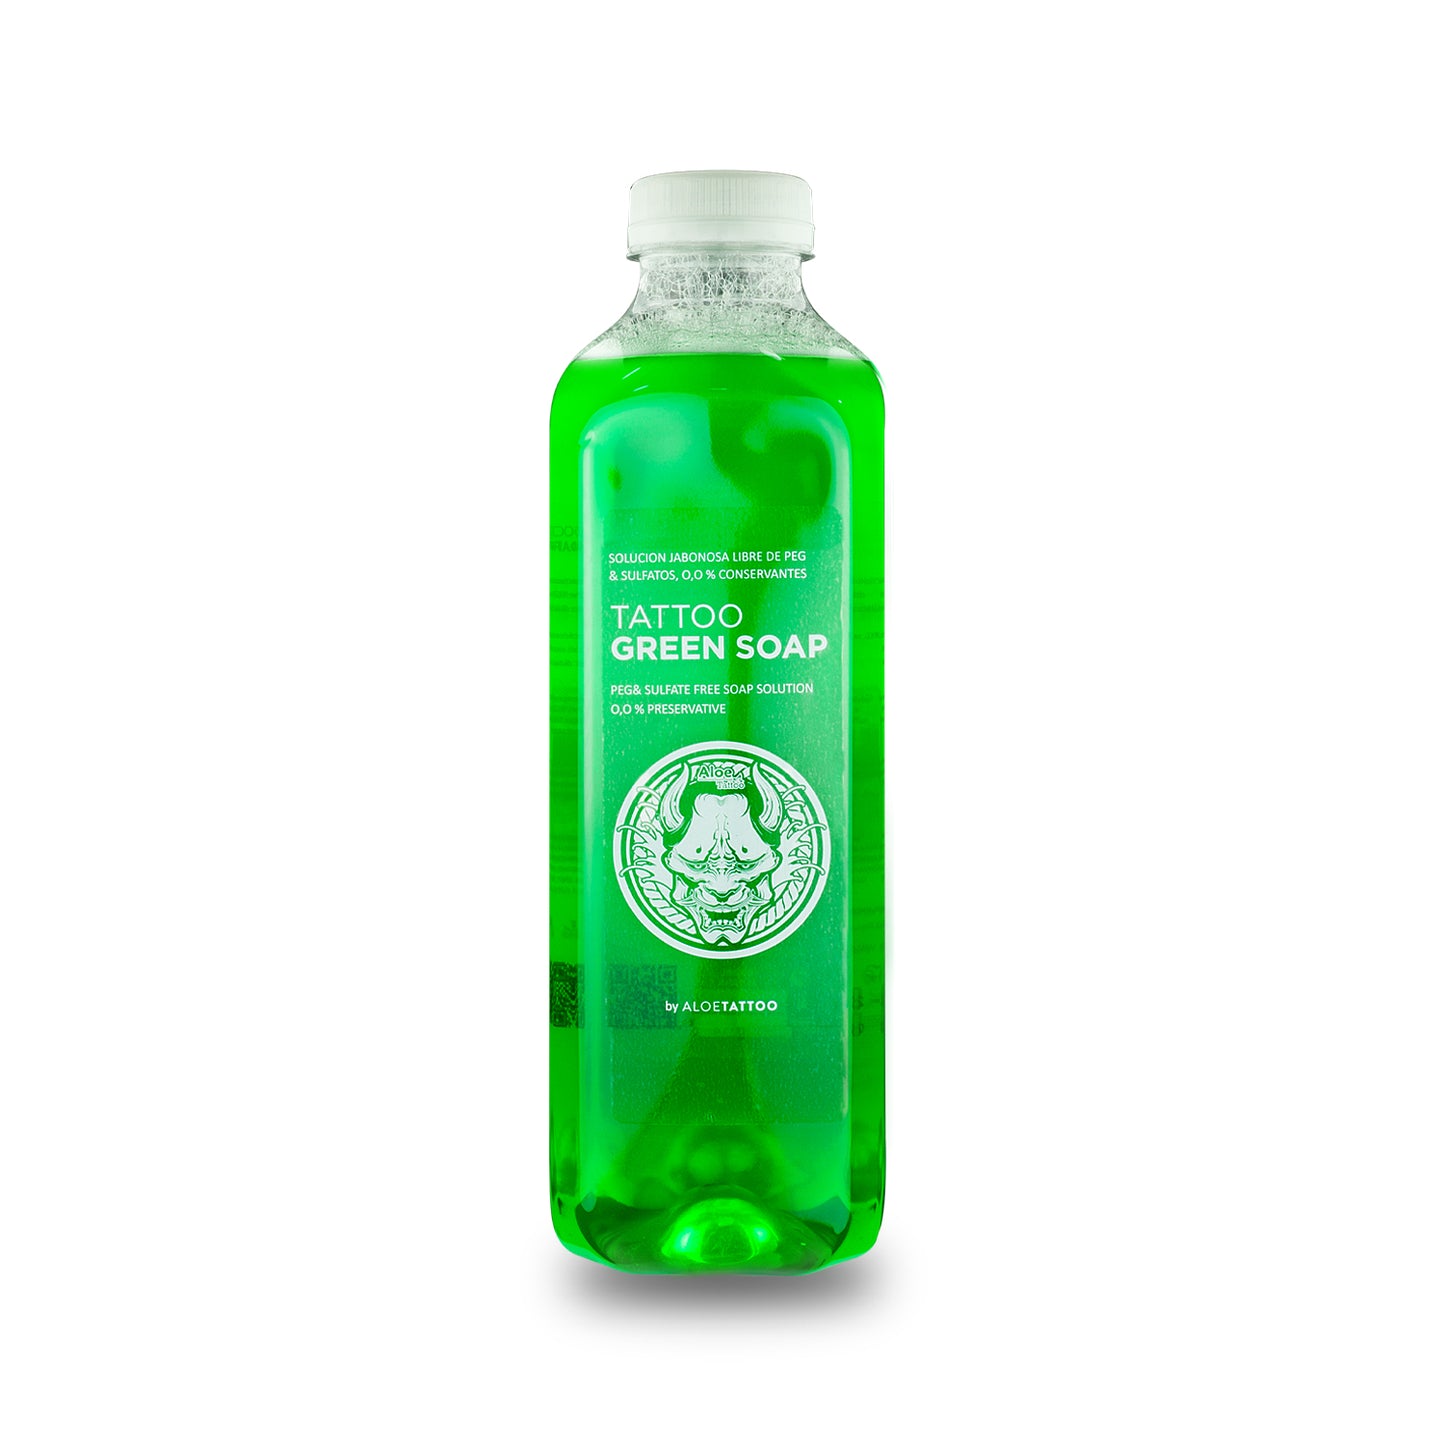 Aloe Tattoo Green Soap bottle 1l